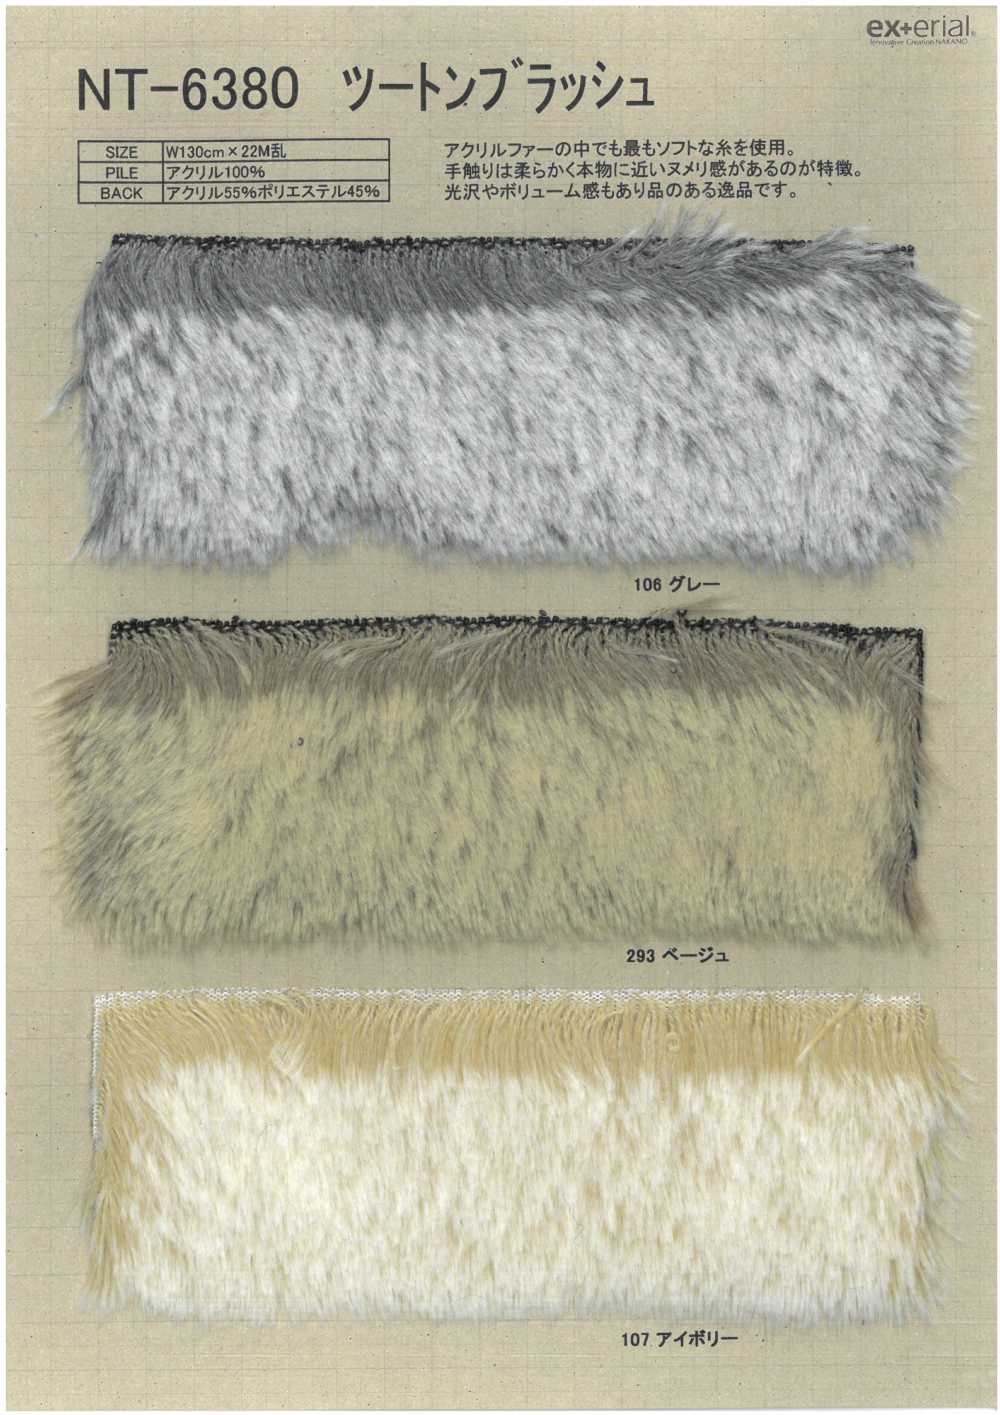 NT-6380 Craft Fur [rubor De Dos Tonos][Fabrica Textil] Industria De La Media Nakano